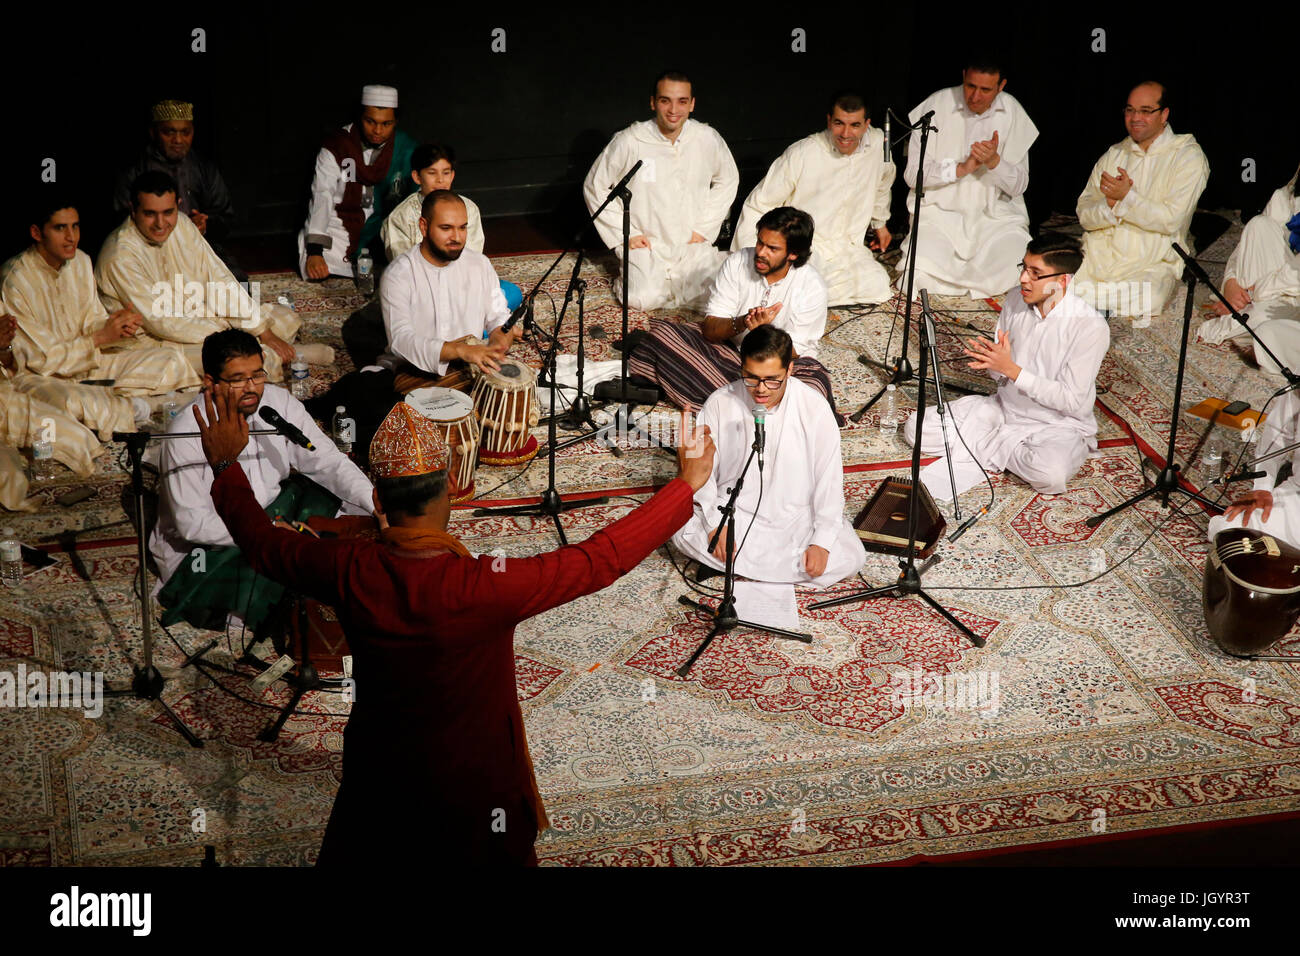 Grand Mawlid de Paris rassemblement soufi et de célébration. Danse soufie Chisti indien en face de groupe sunnite Khanqa (Maurice). La France. Banque D'Images